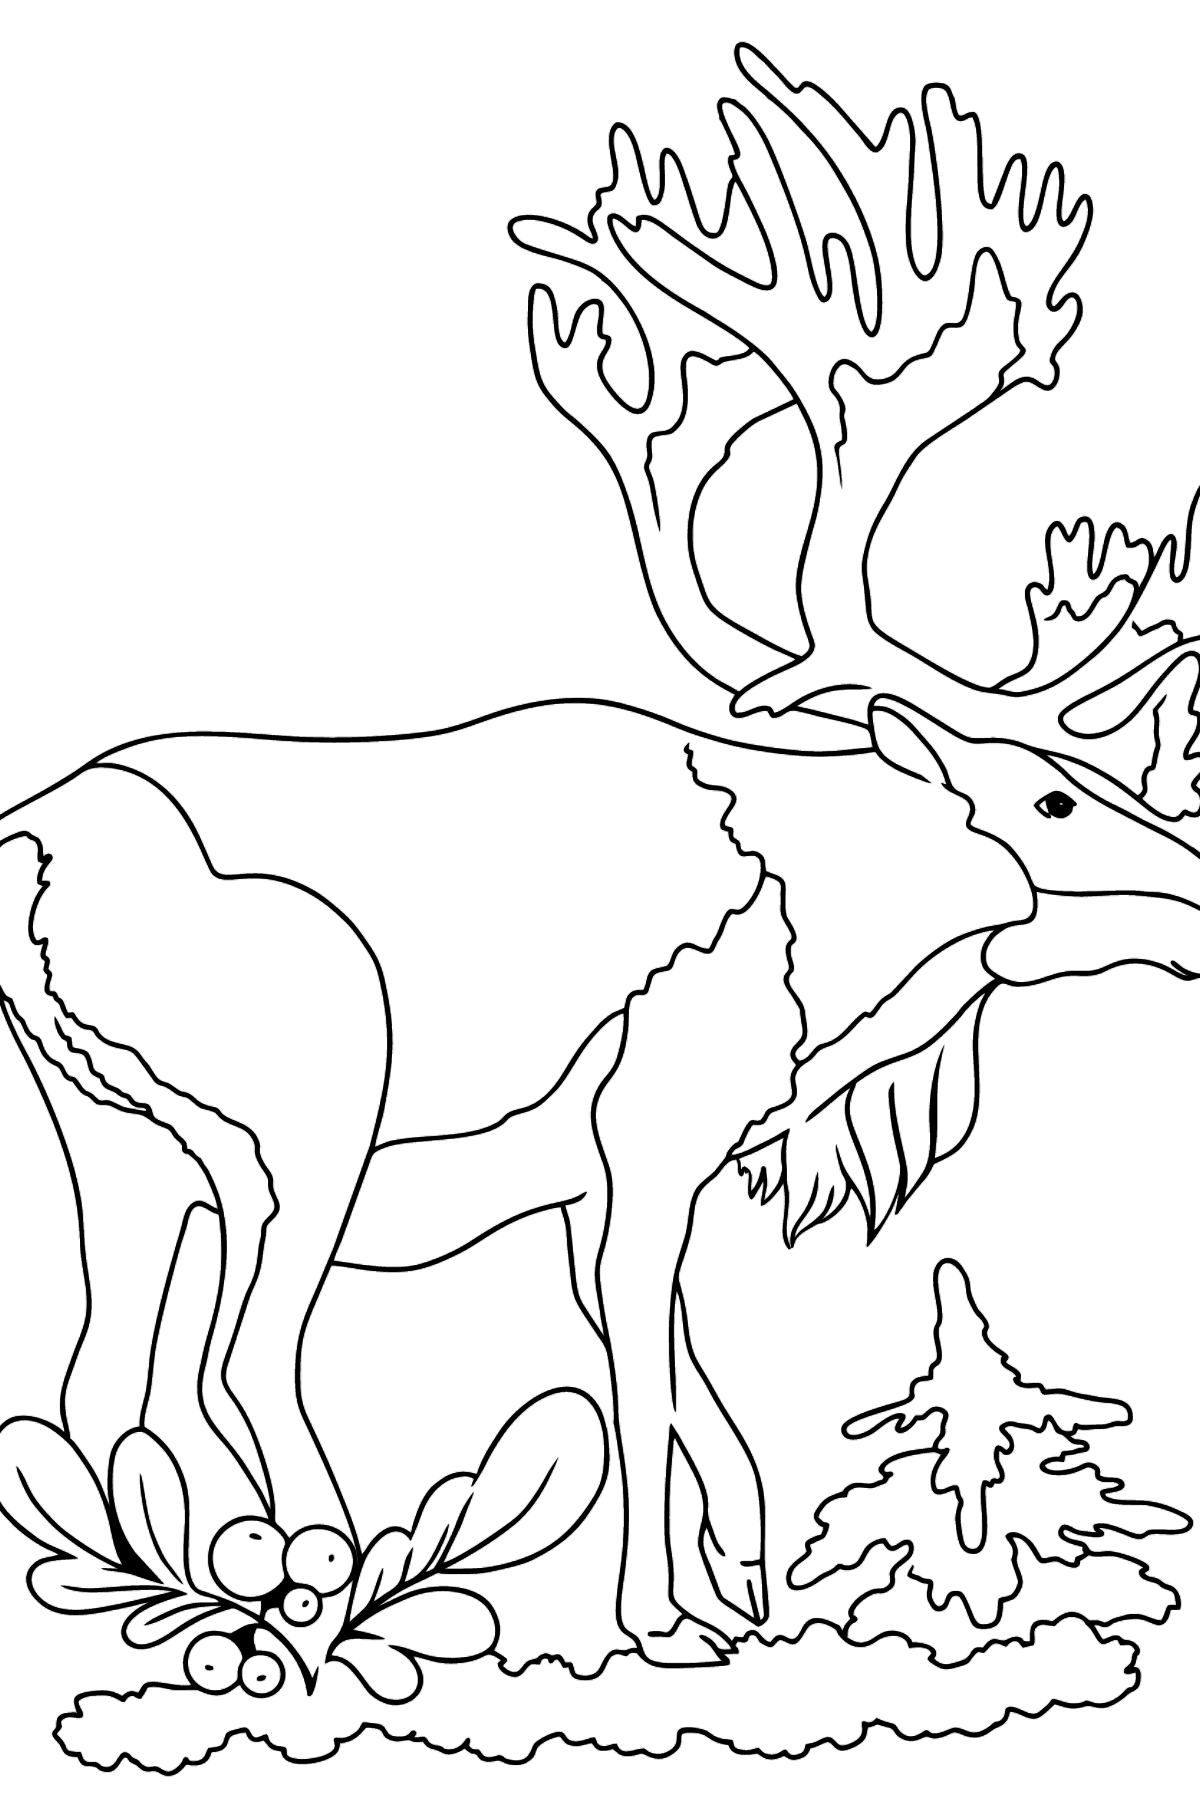 Desenho de cervo para colorir - Imagens para Colorir para Crianças